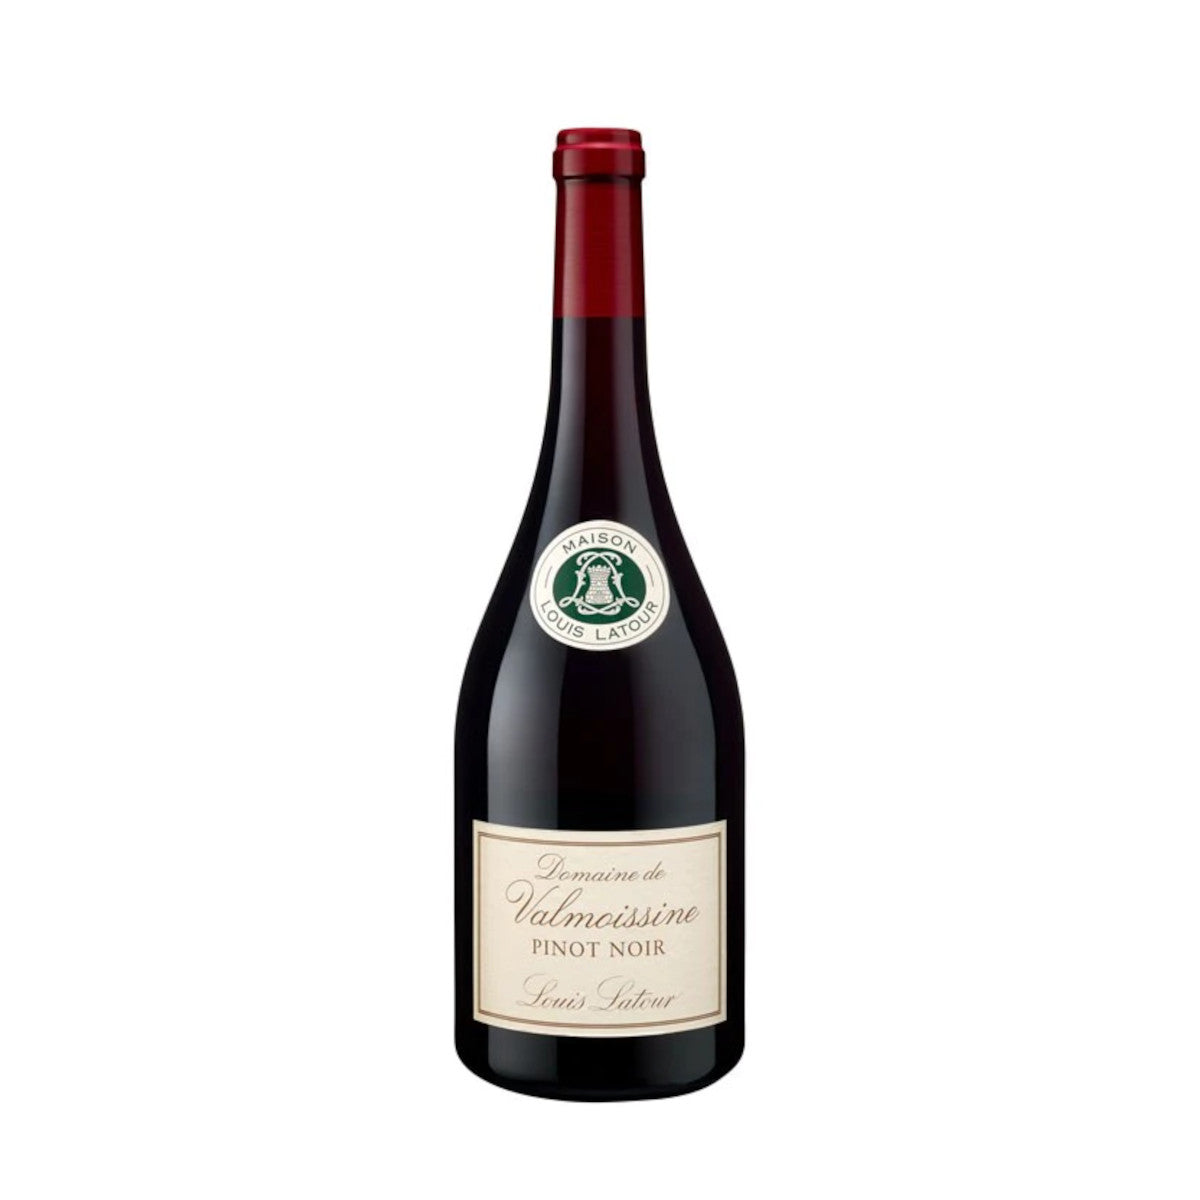 Domaine de Valmoissine Pinot Noir Louis Latour